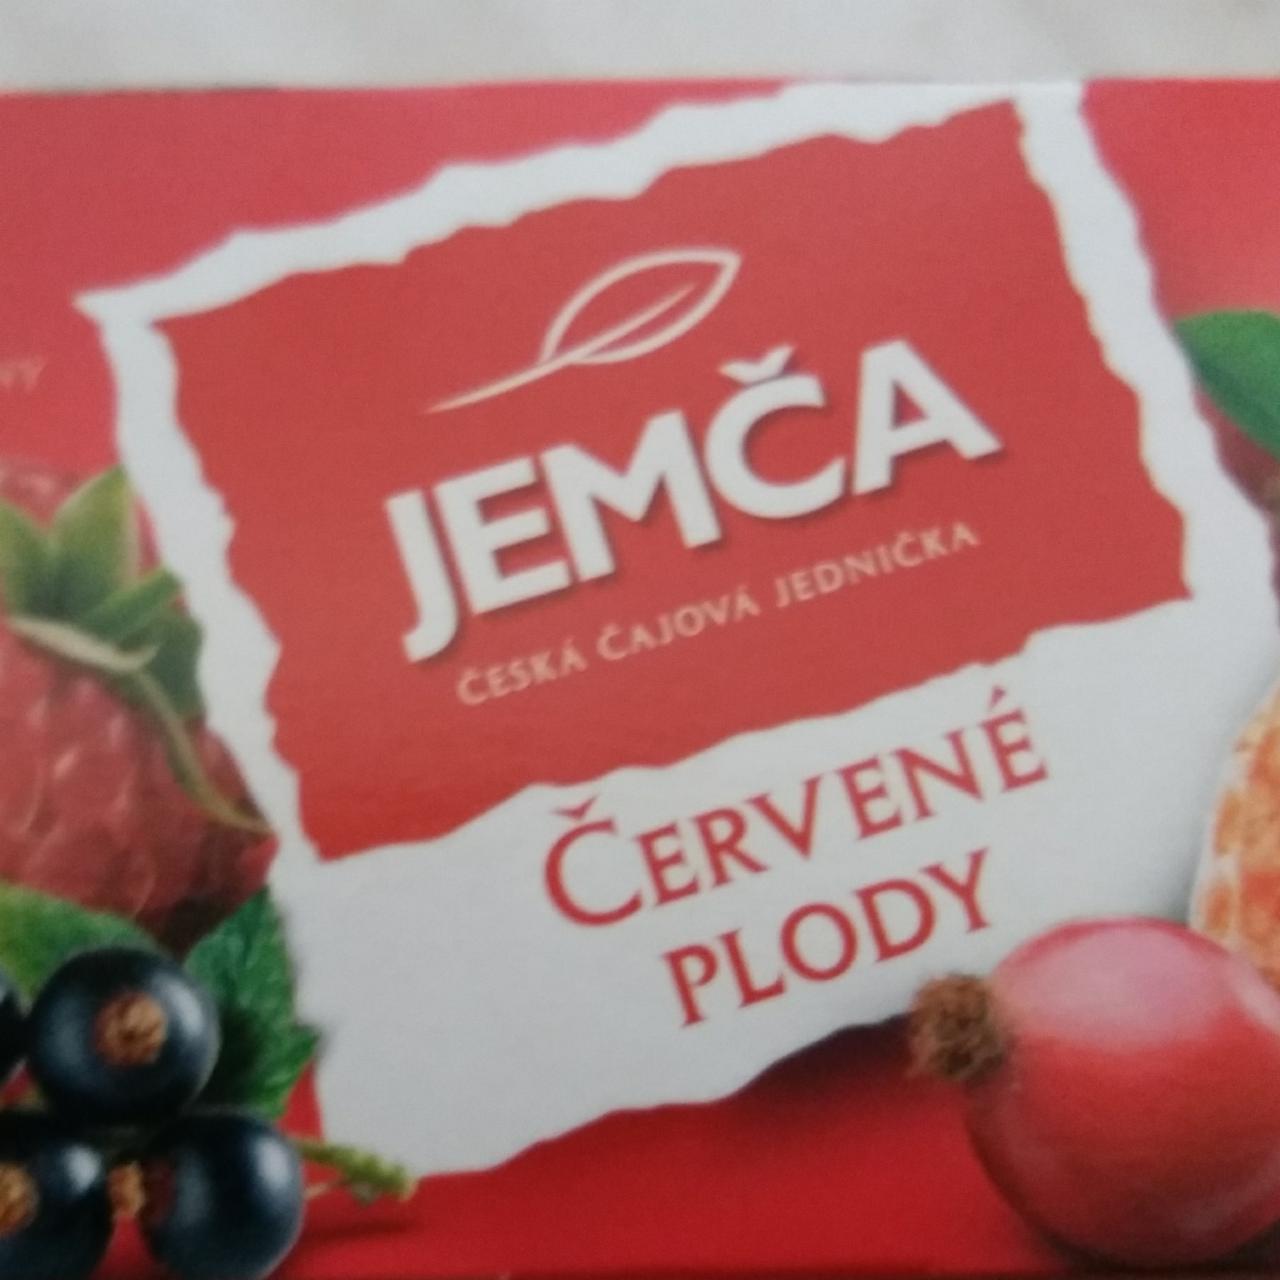 Fotografie - Červené plody Jemča